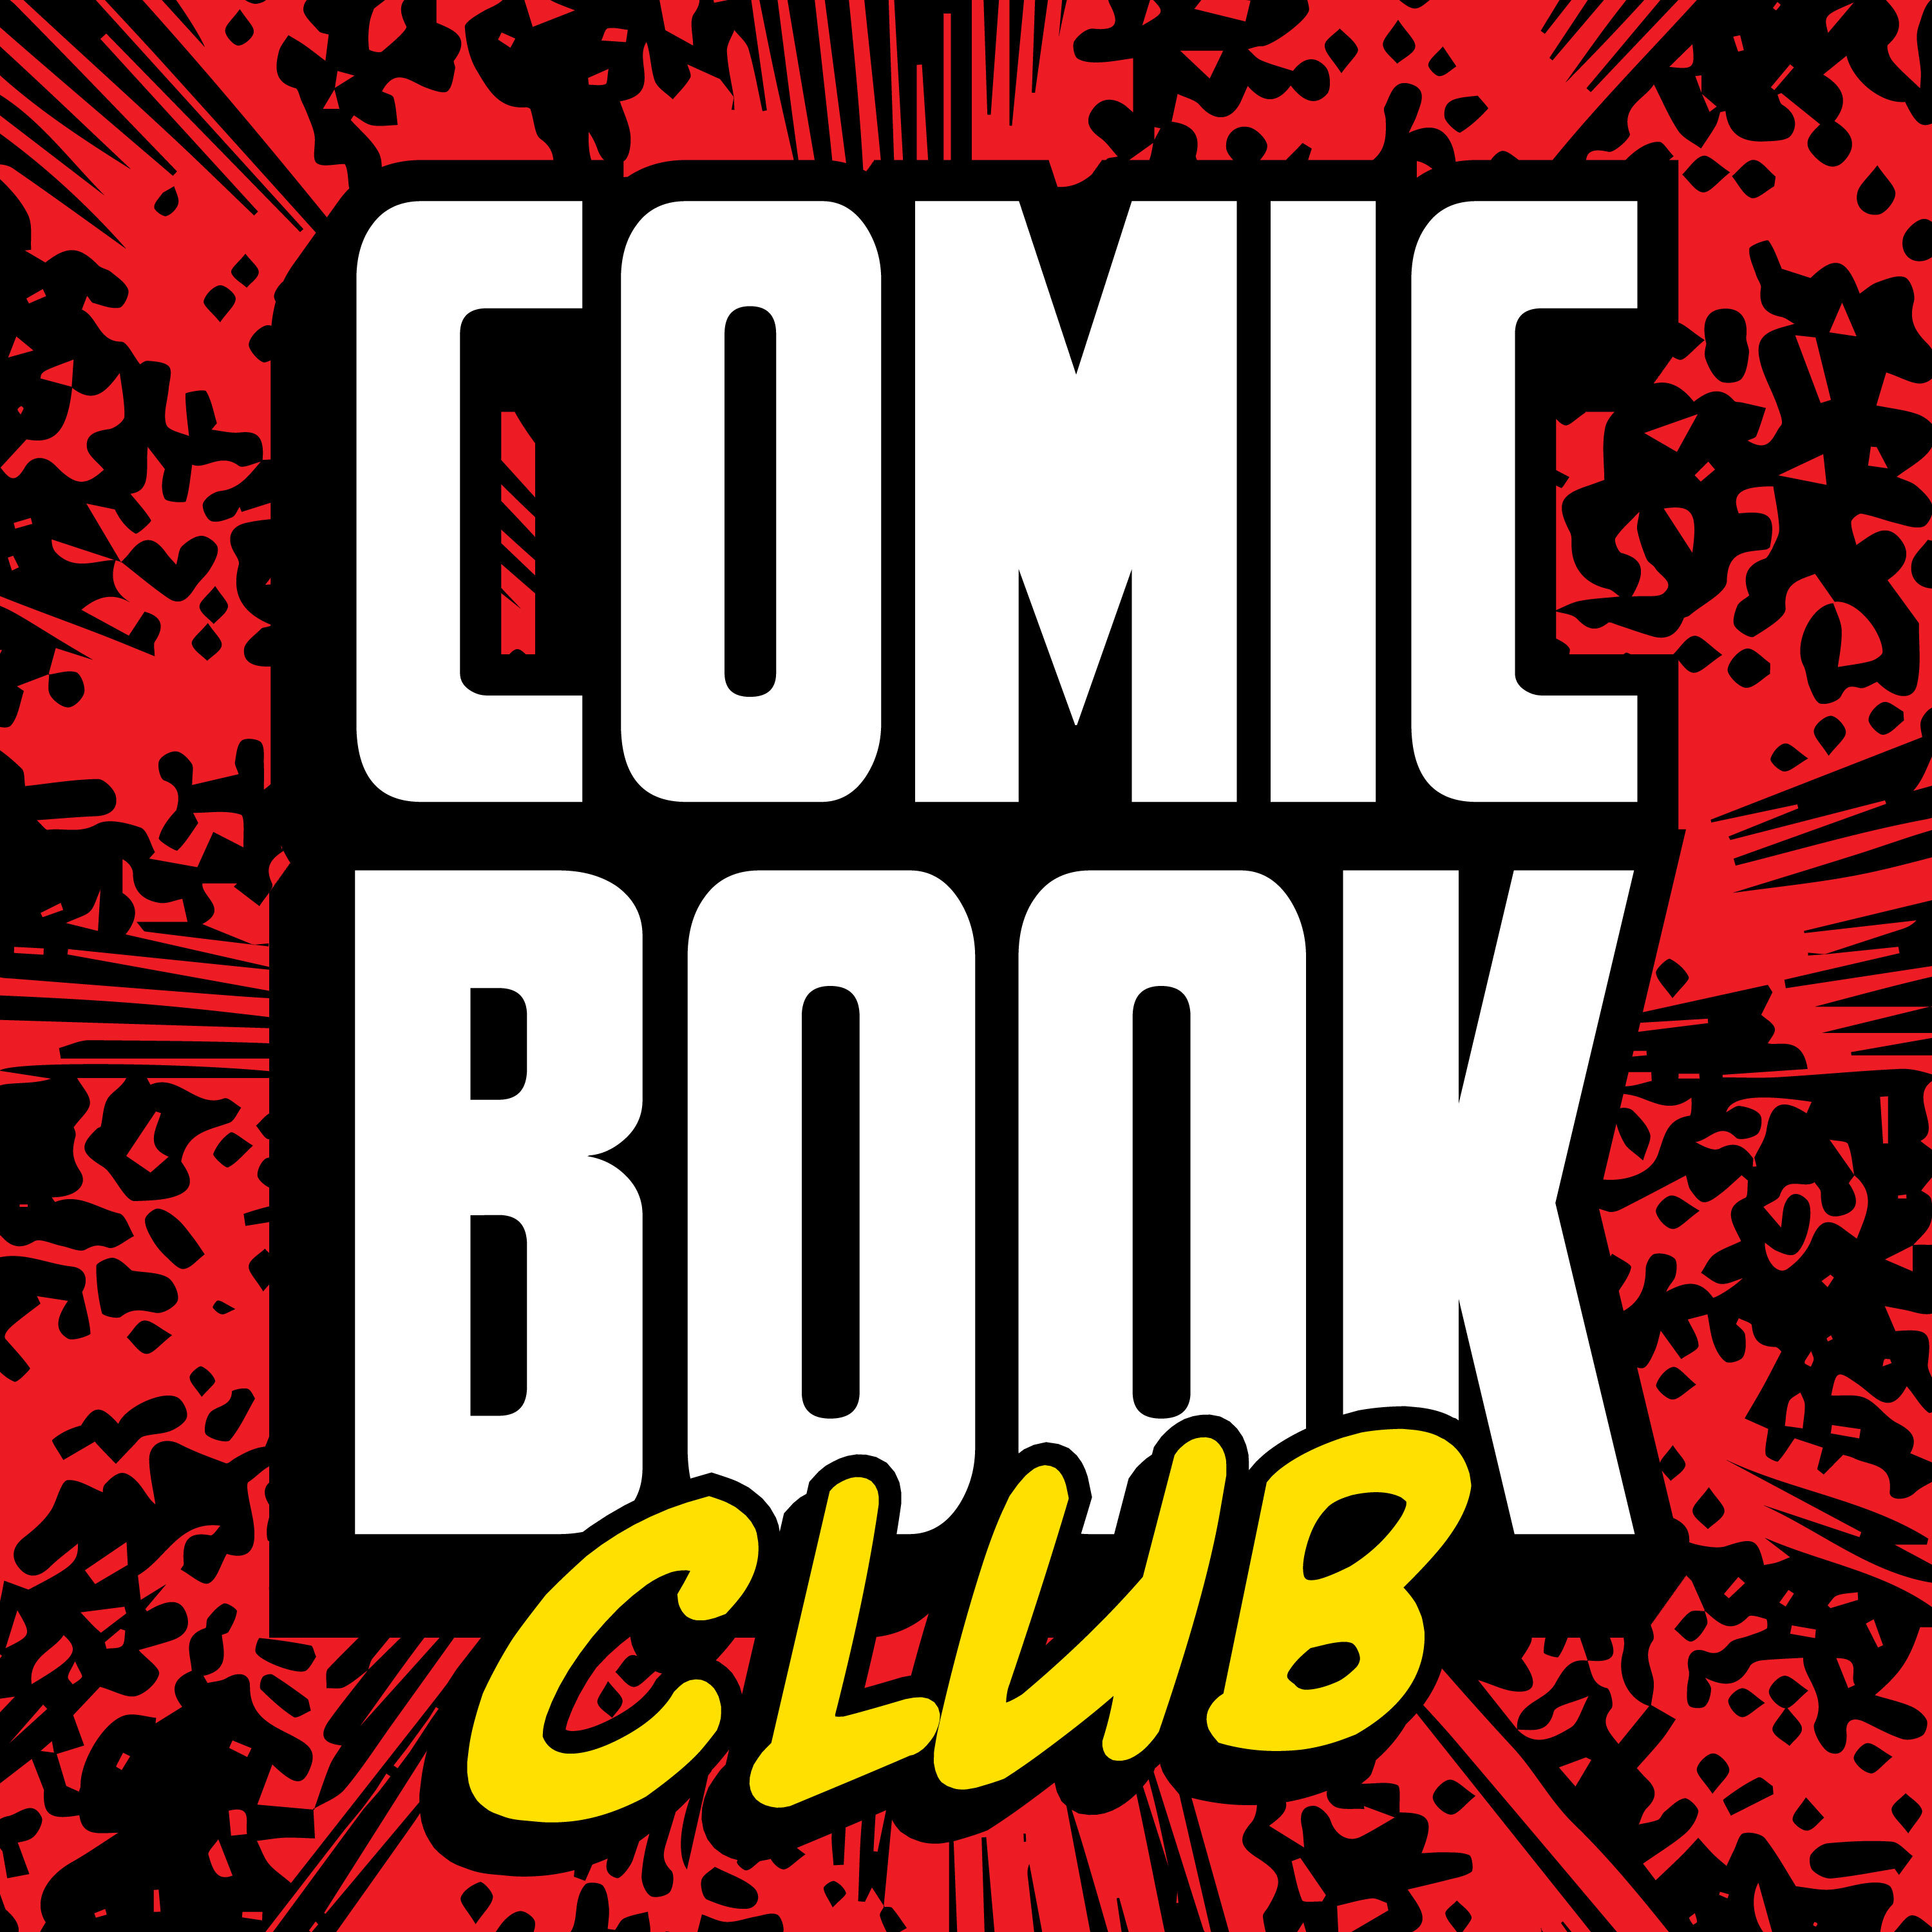 Comic Book Club: Chris Hastings And Kat Calamia